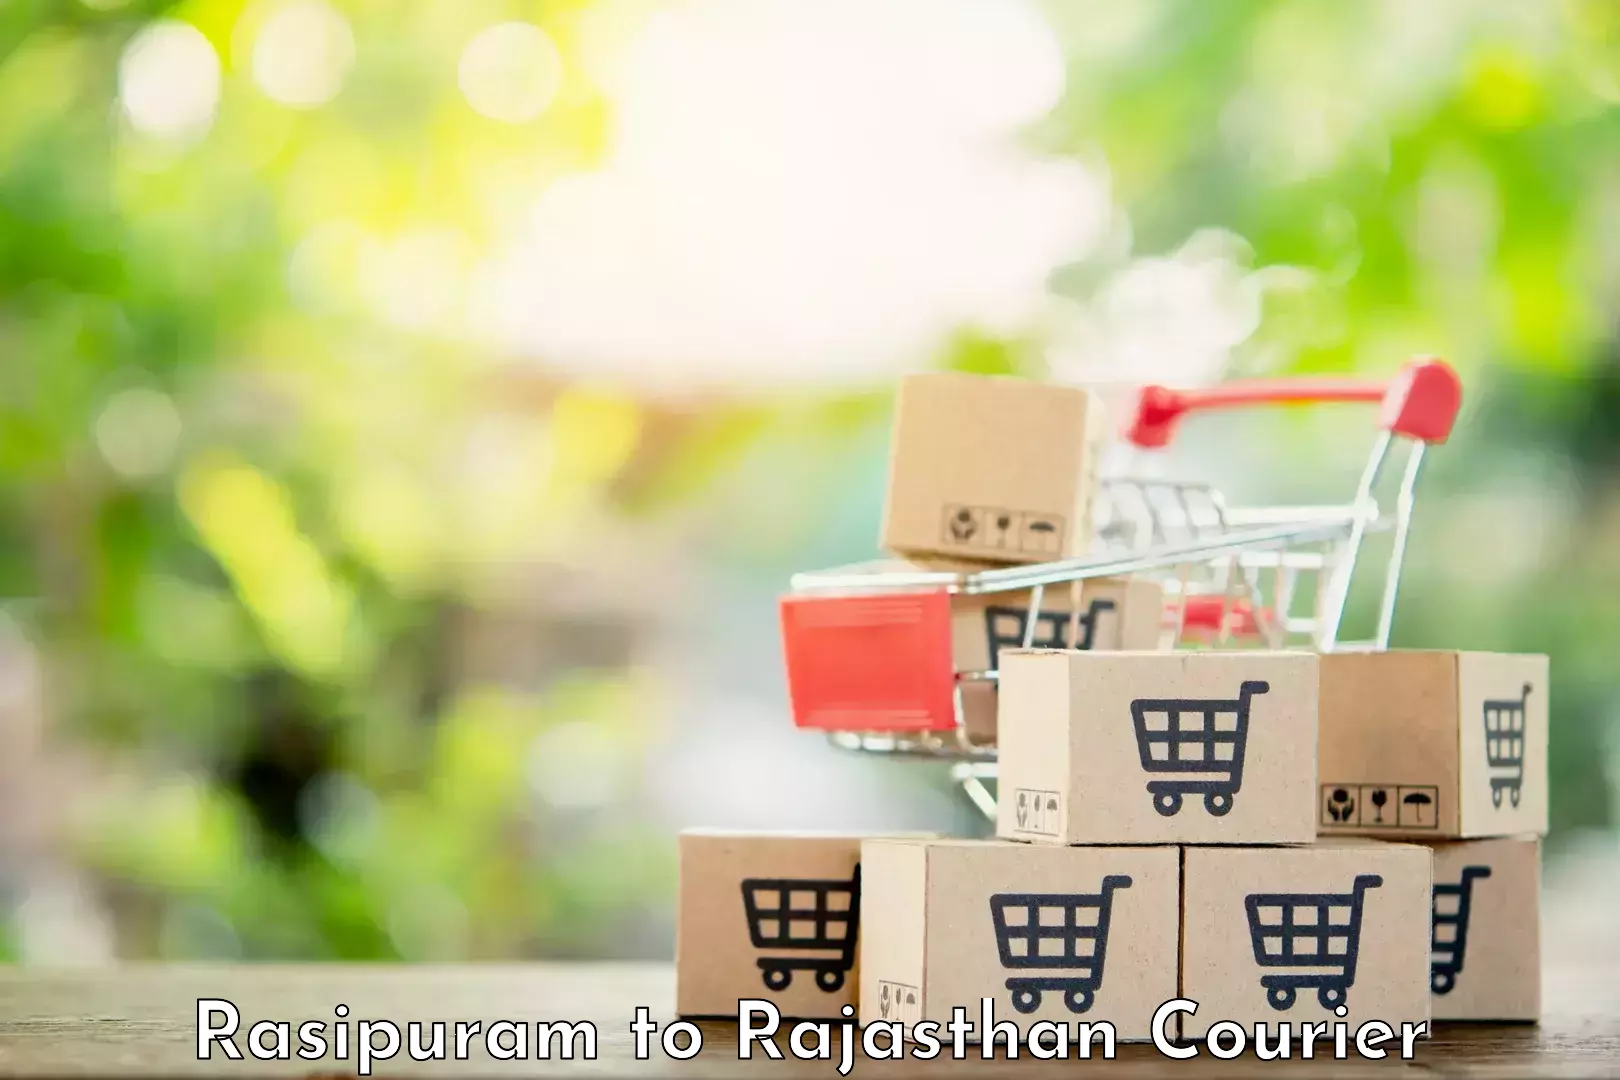 User-friendly courier app Rasipuram to Barmer